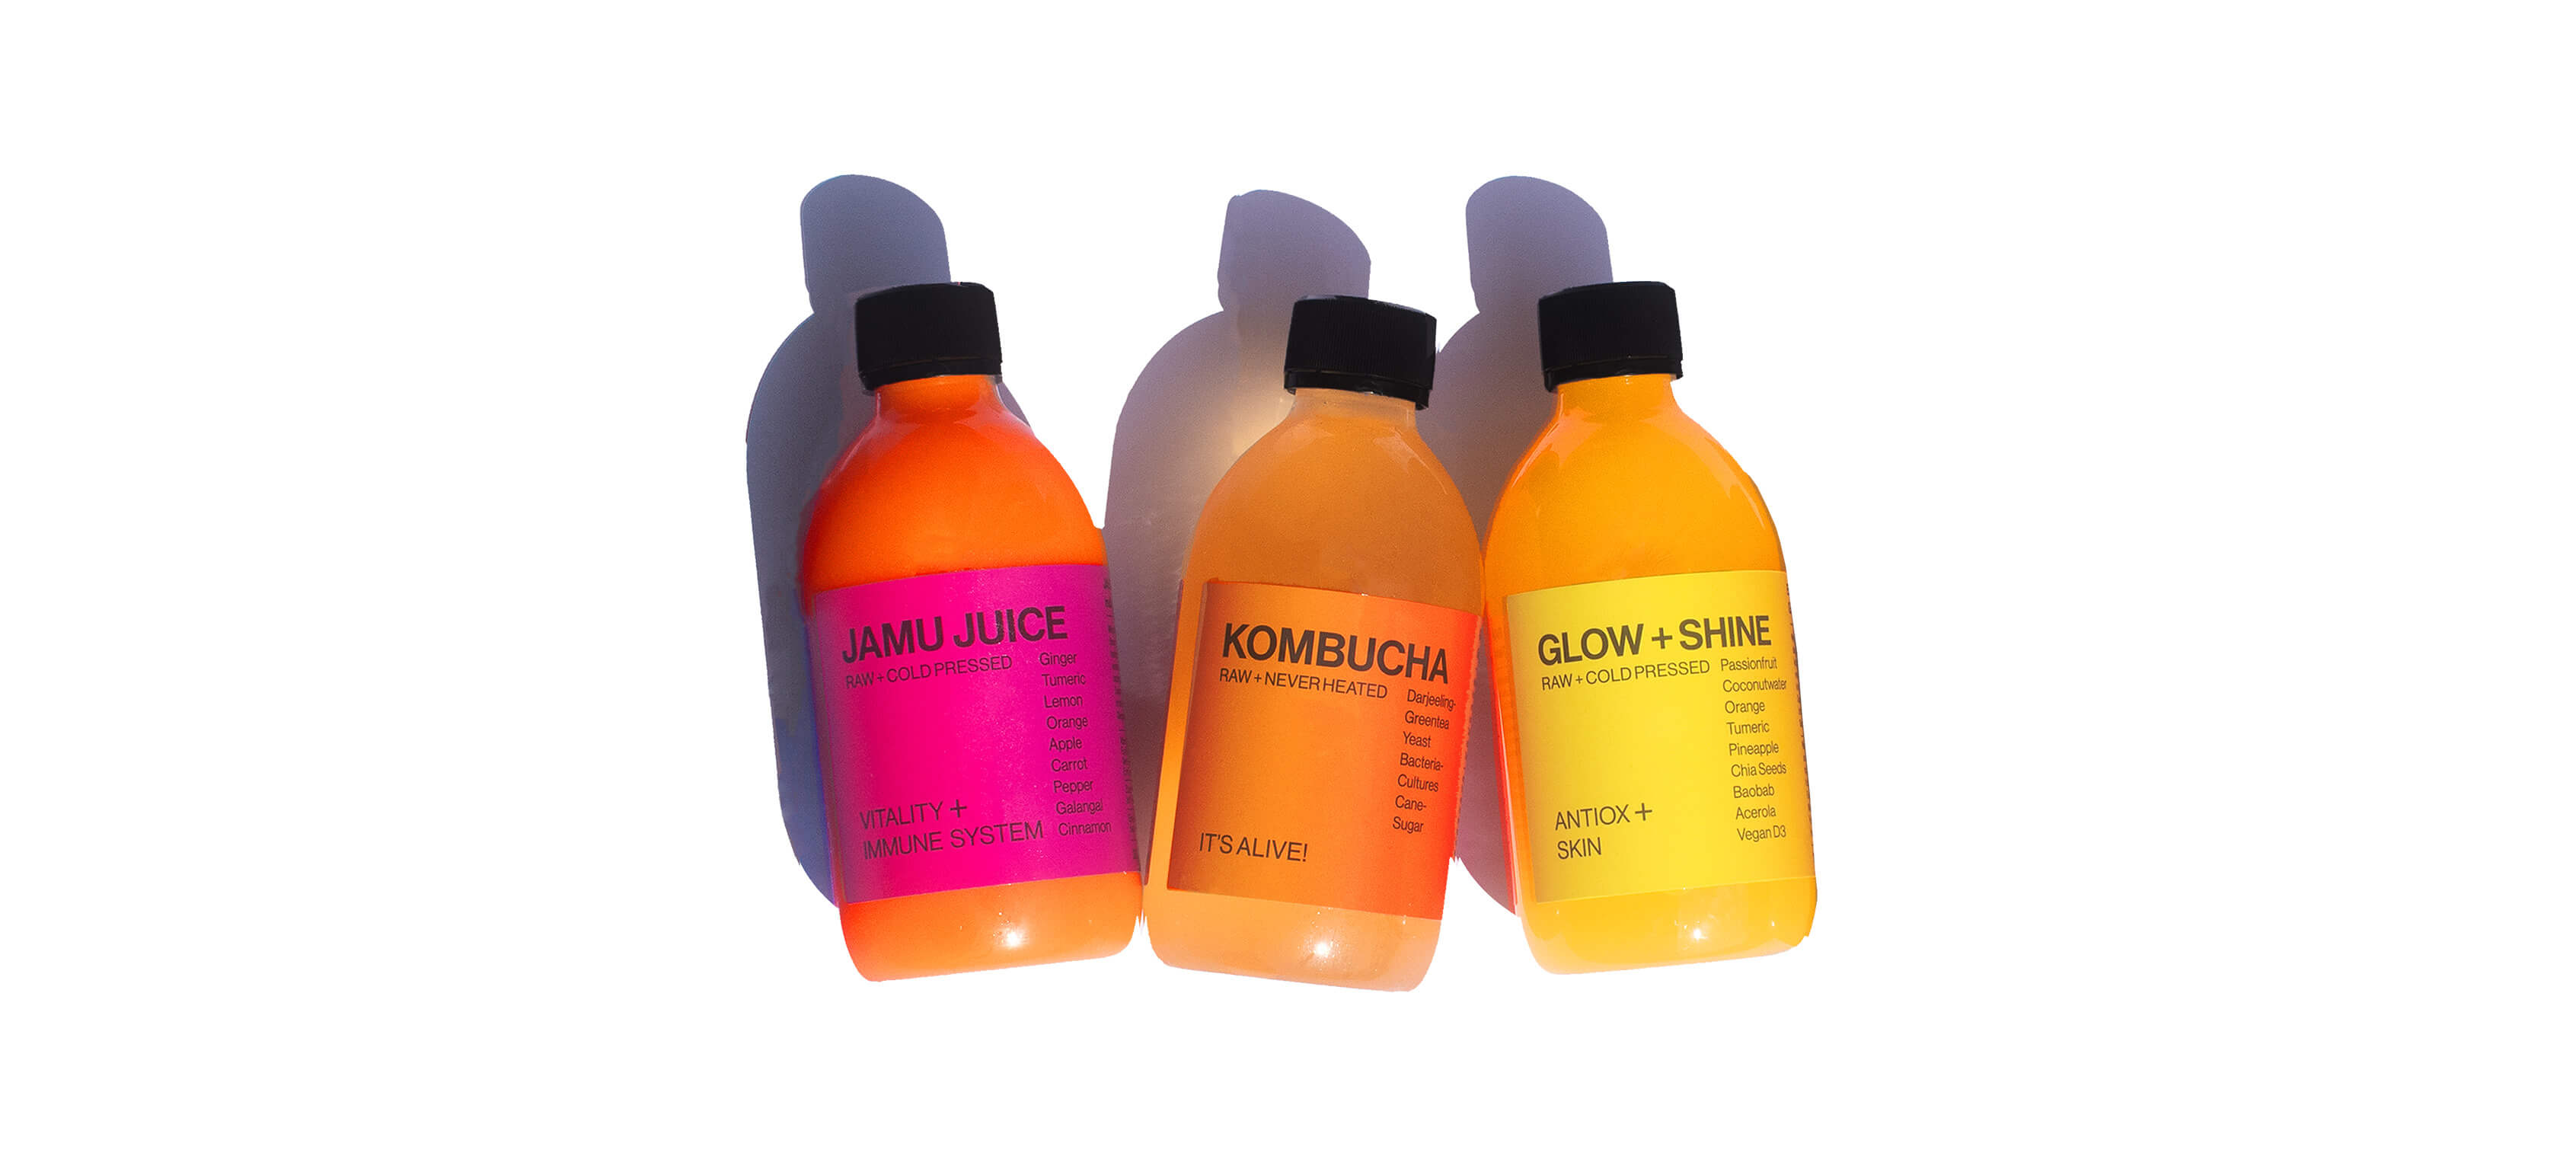 Glow + Shine, Kombucha, Jamu Juice